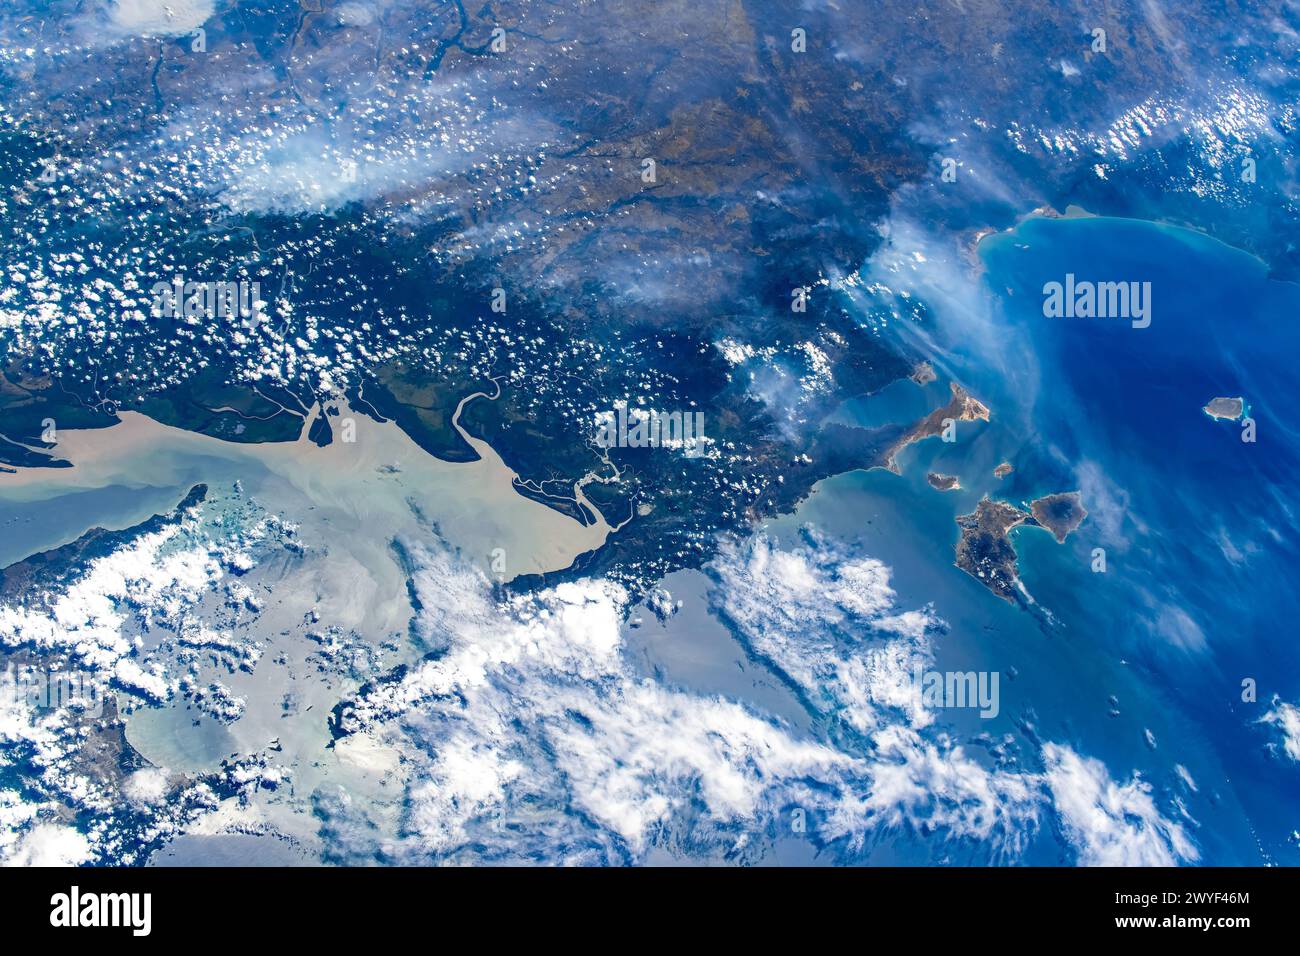 Küstenmerkmale in Venezuela. Digitale Verbesserung eines von der NASA bereitgestellten Bildes Stockfoto